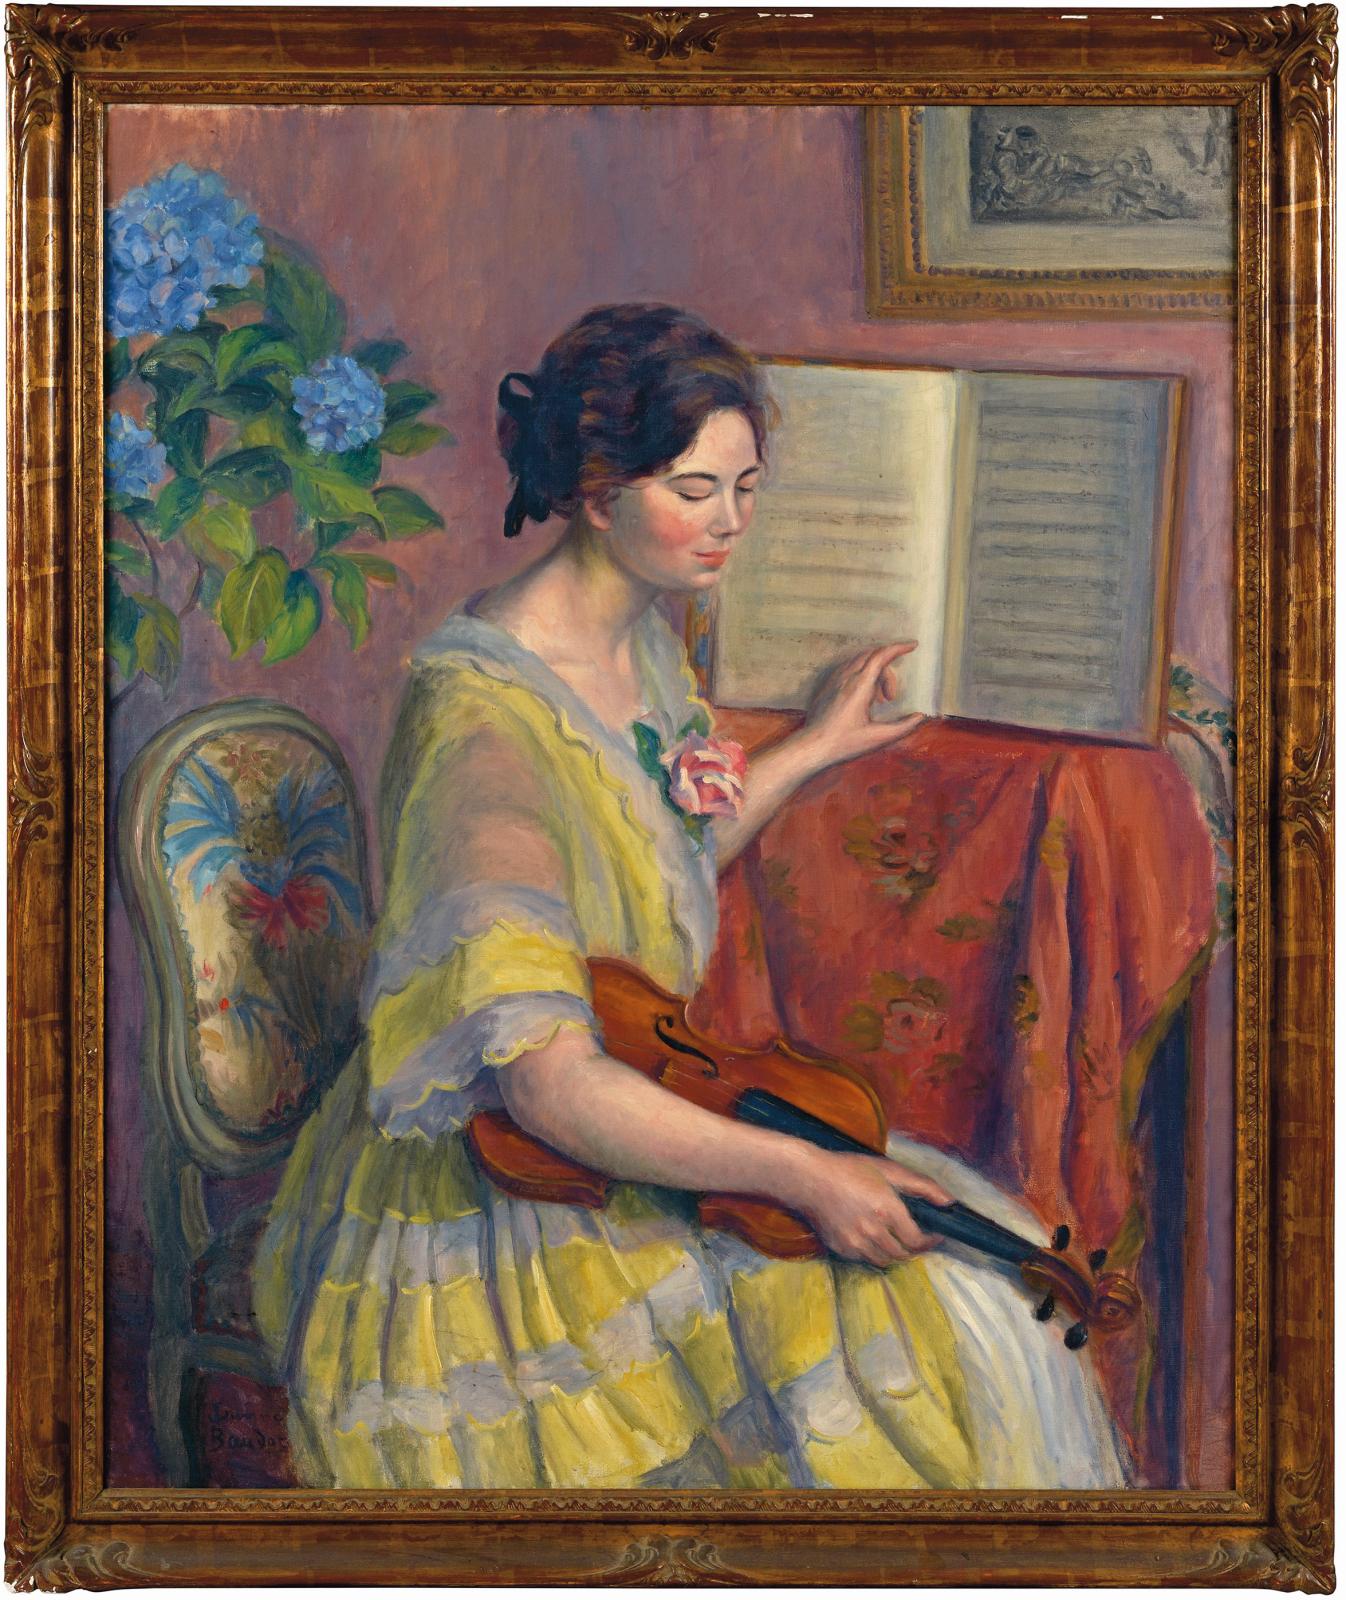 Jeanne Baudot, dans le sillage de Renoir